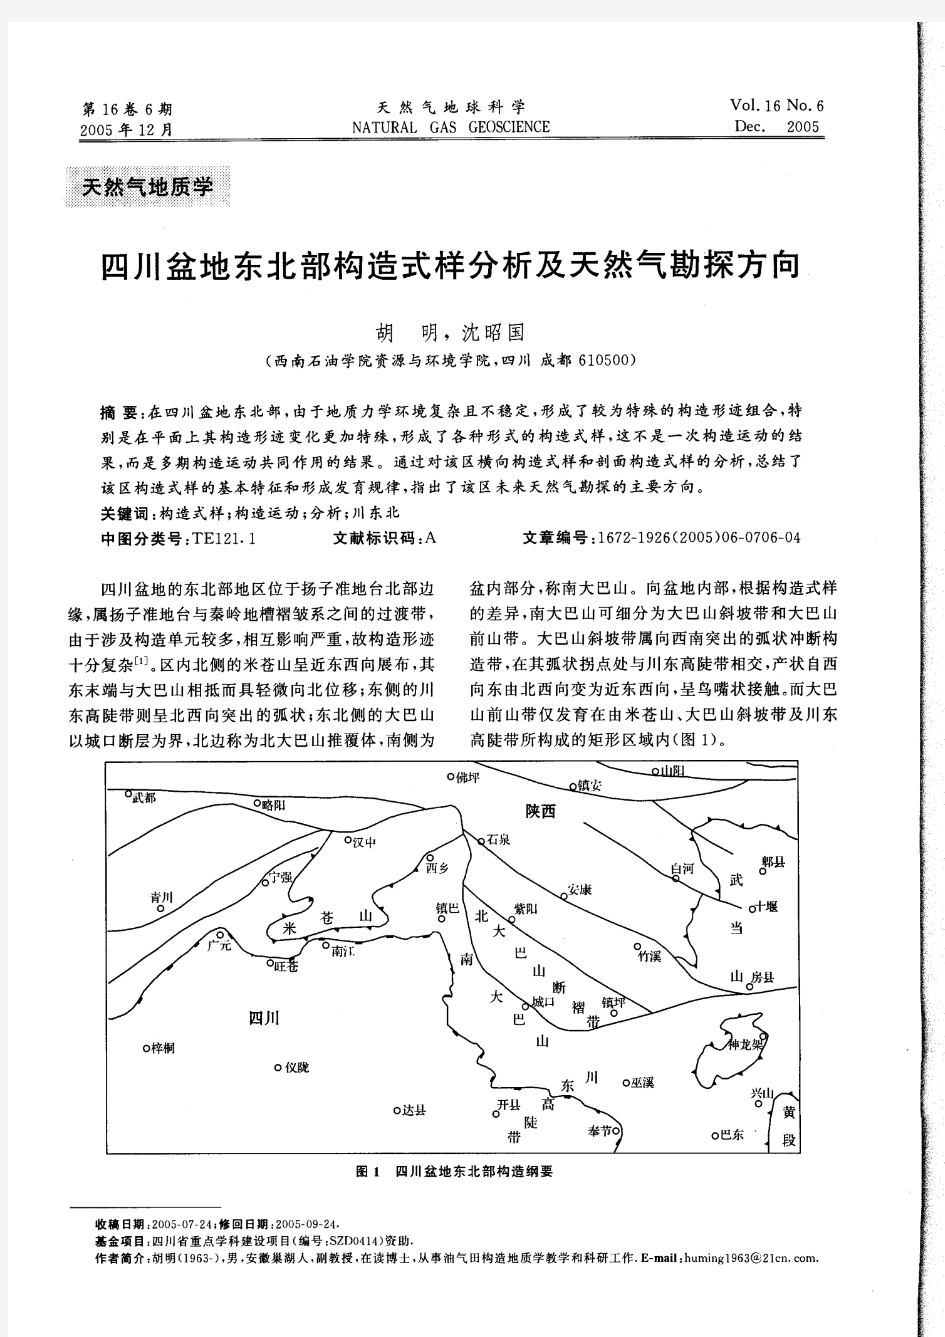 四川盆地东北部构造式样分析及天然气勘探方向